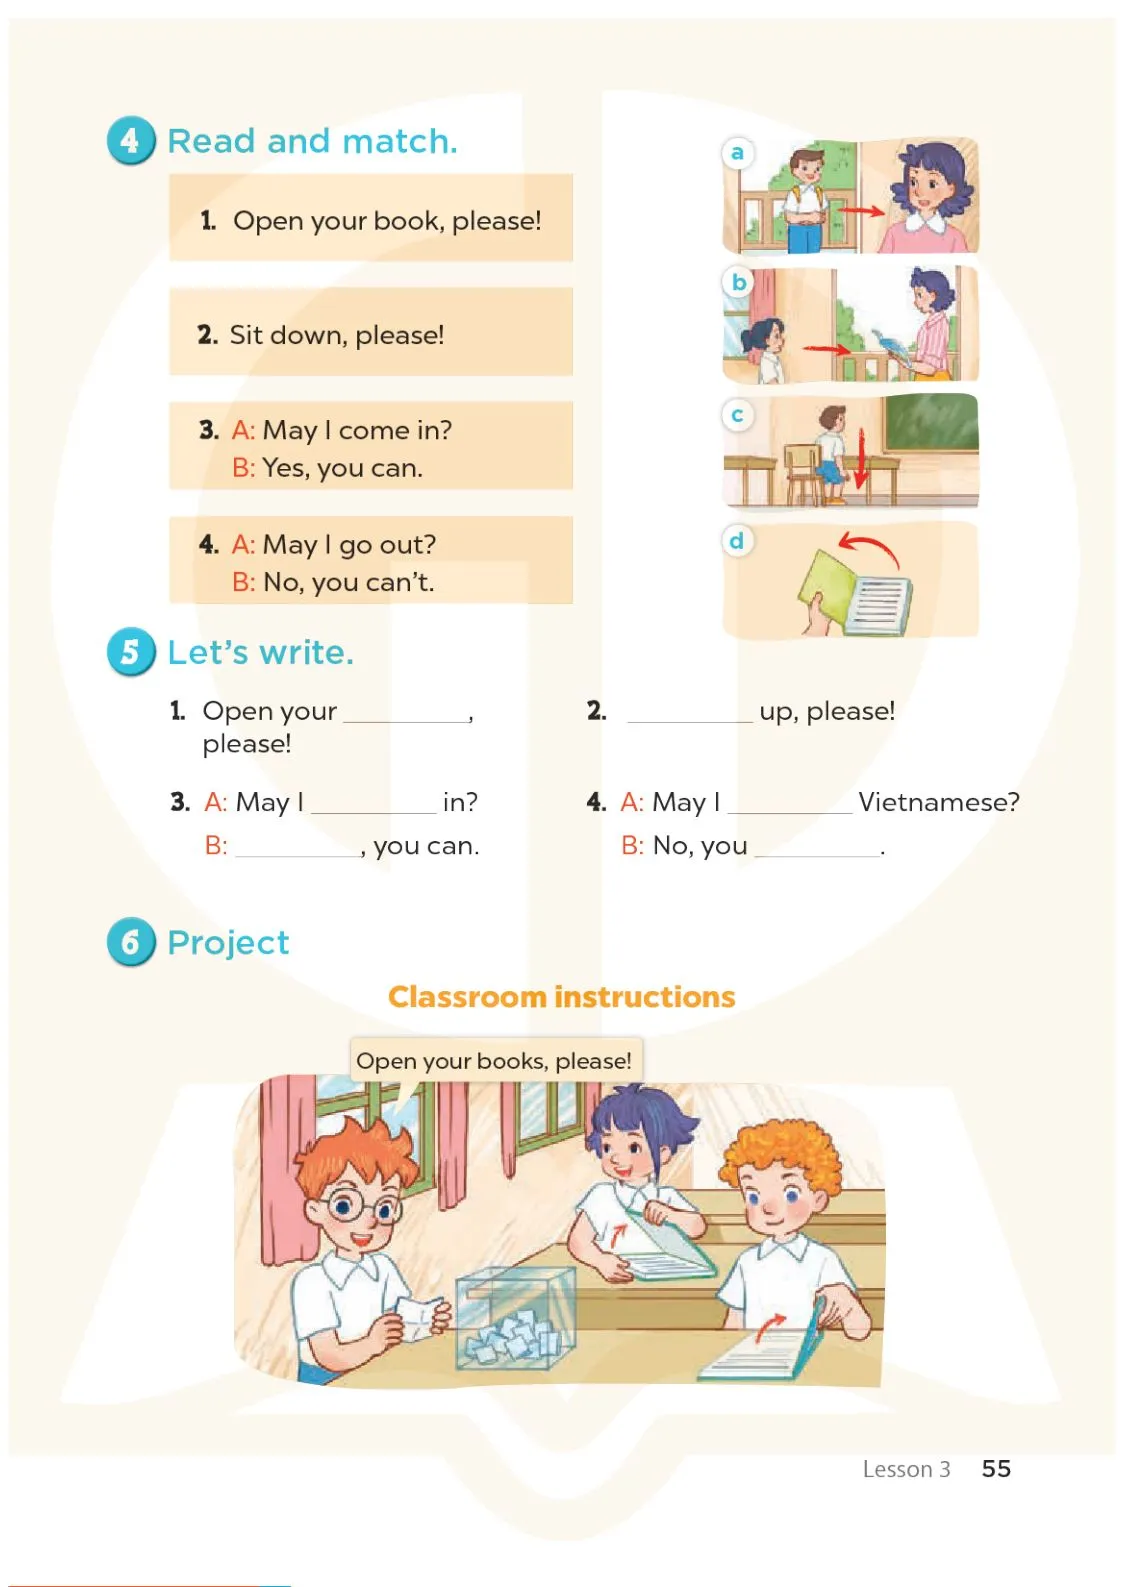 Unit 7 Classroom instructions